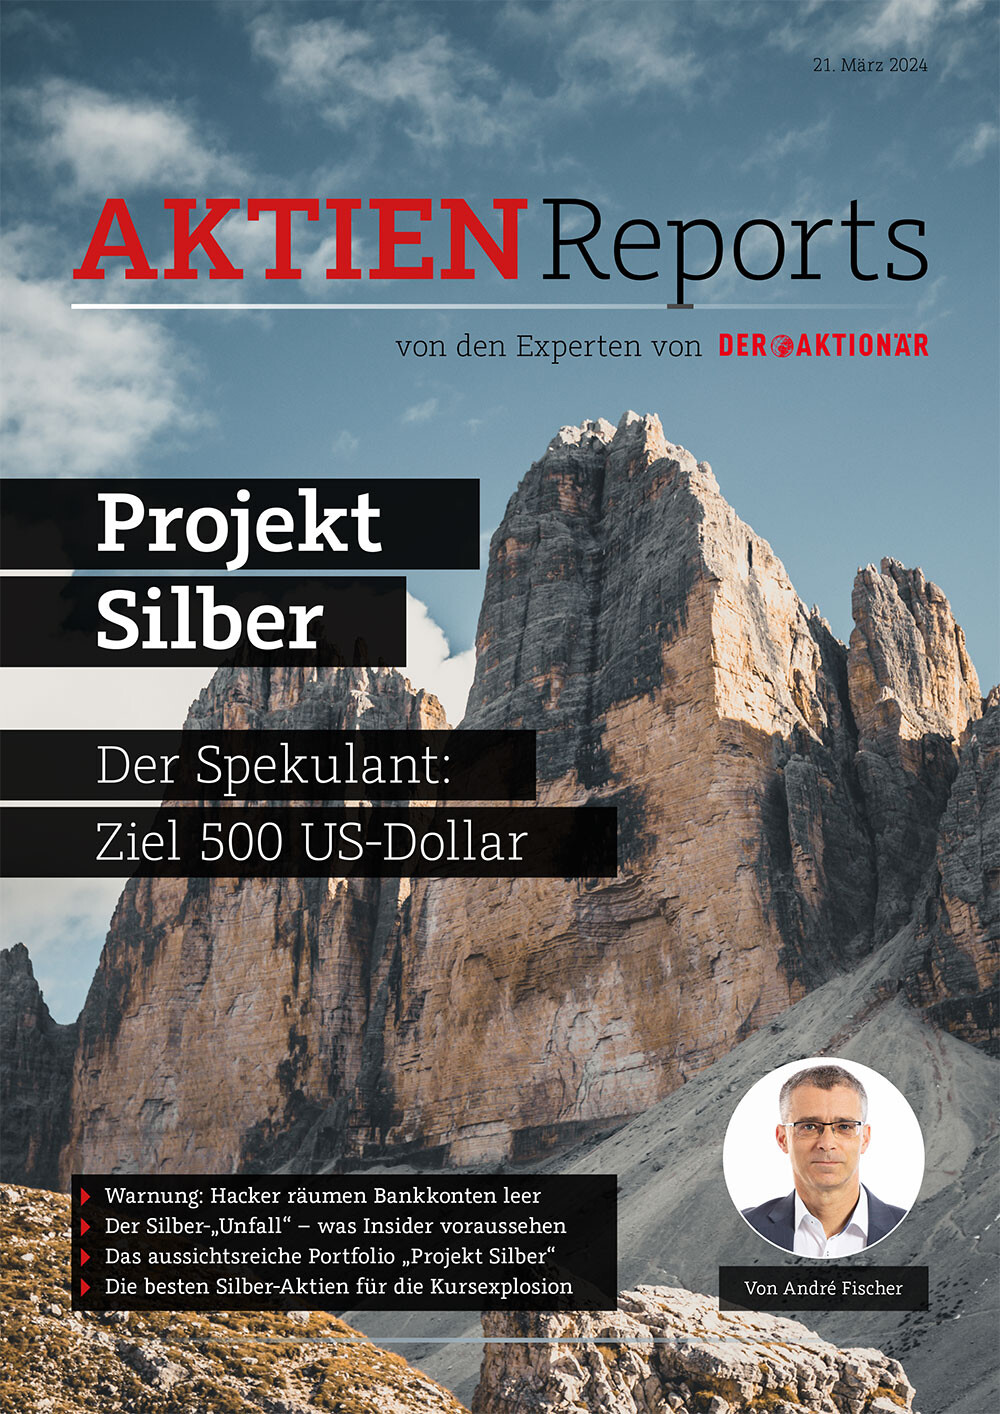 Jetzt den Aktien-Report zum "Projekt Silber" lesen